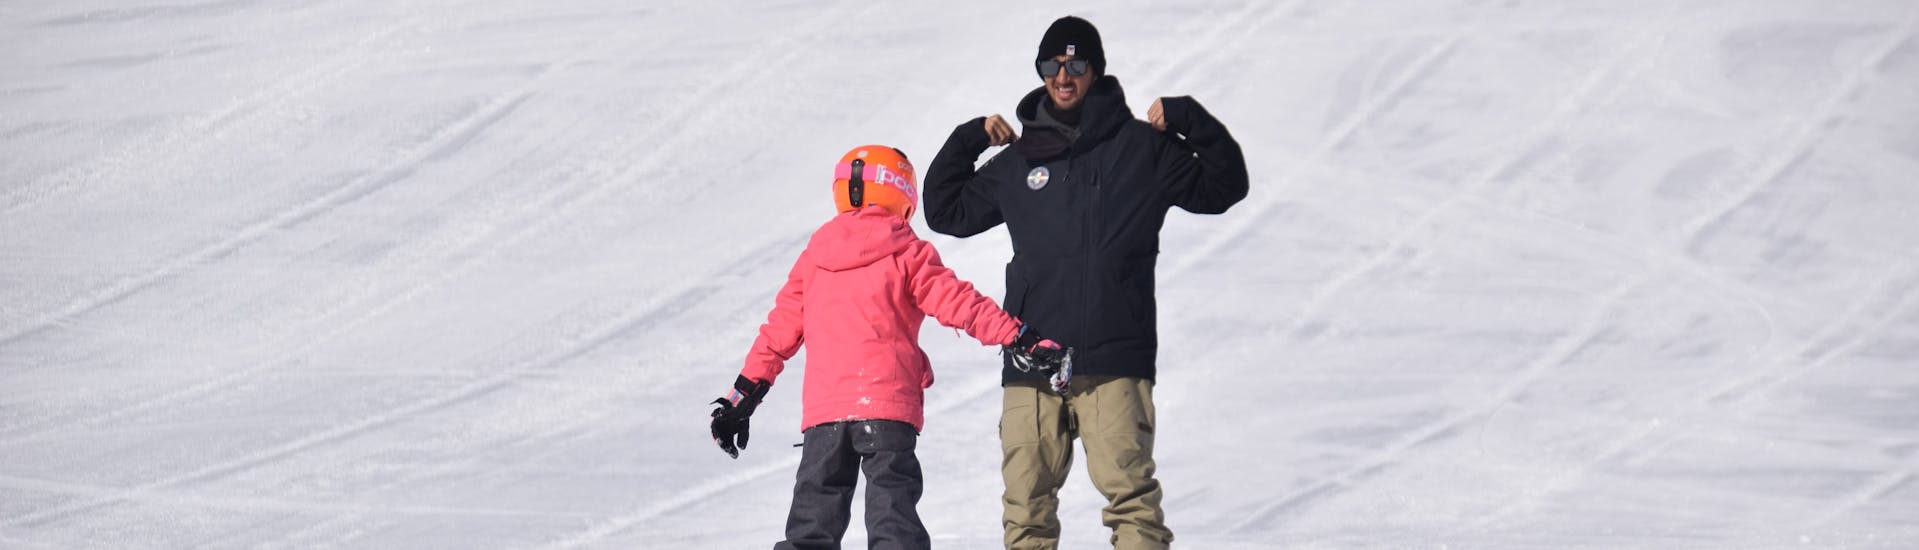 Moniteur de snowboard expliquant l'exercice au participant à un des cours particuliers de snowboard pour enfants et adultes de tous niveaux à Livigno.